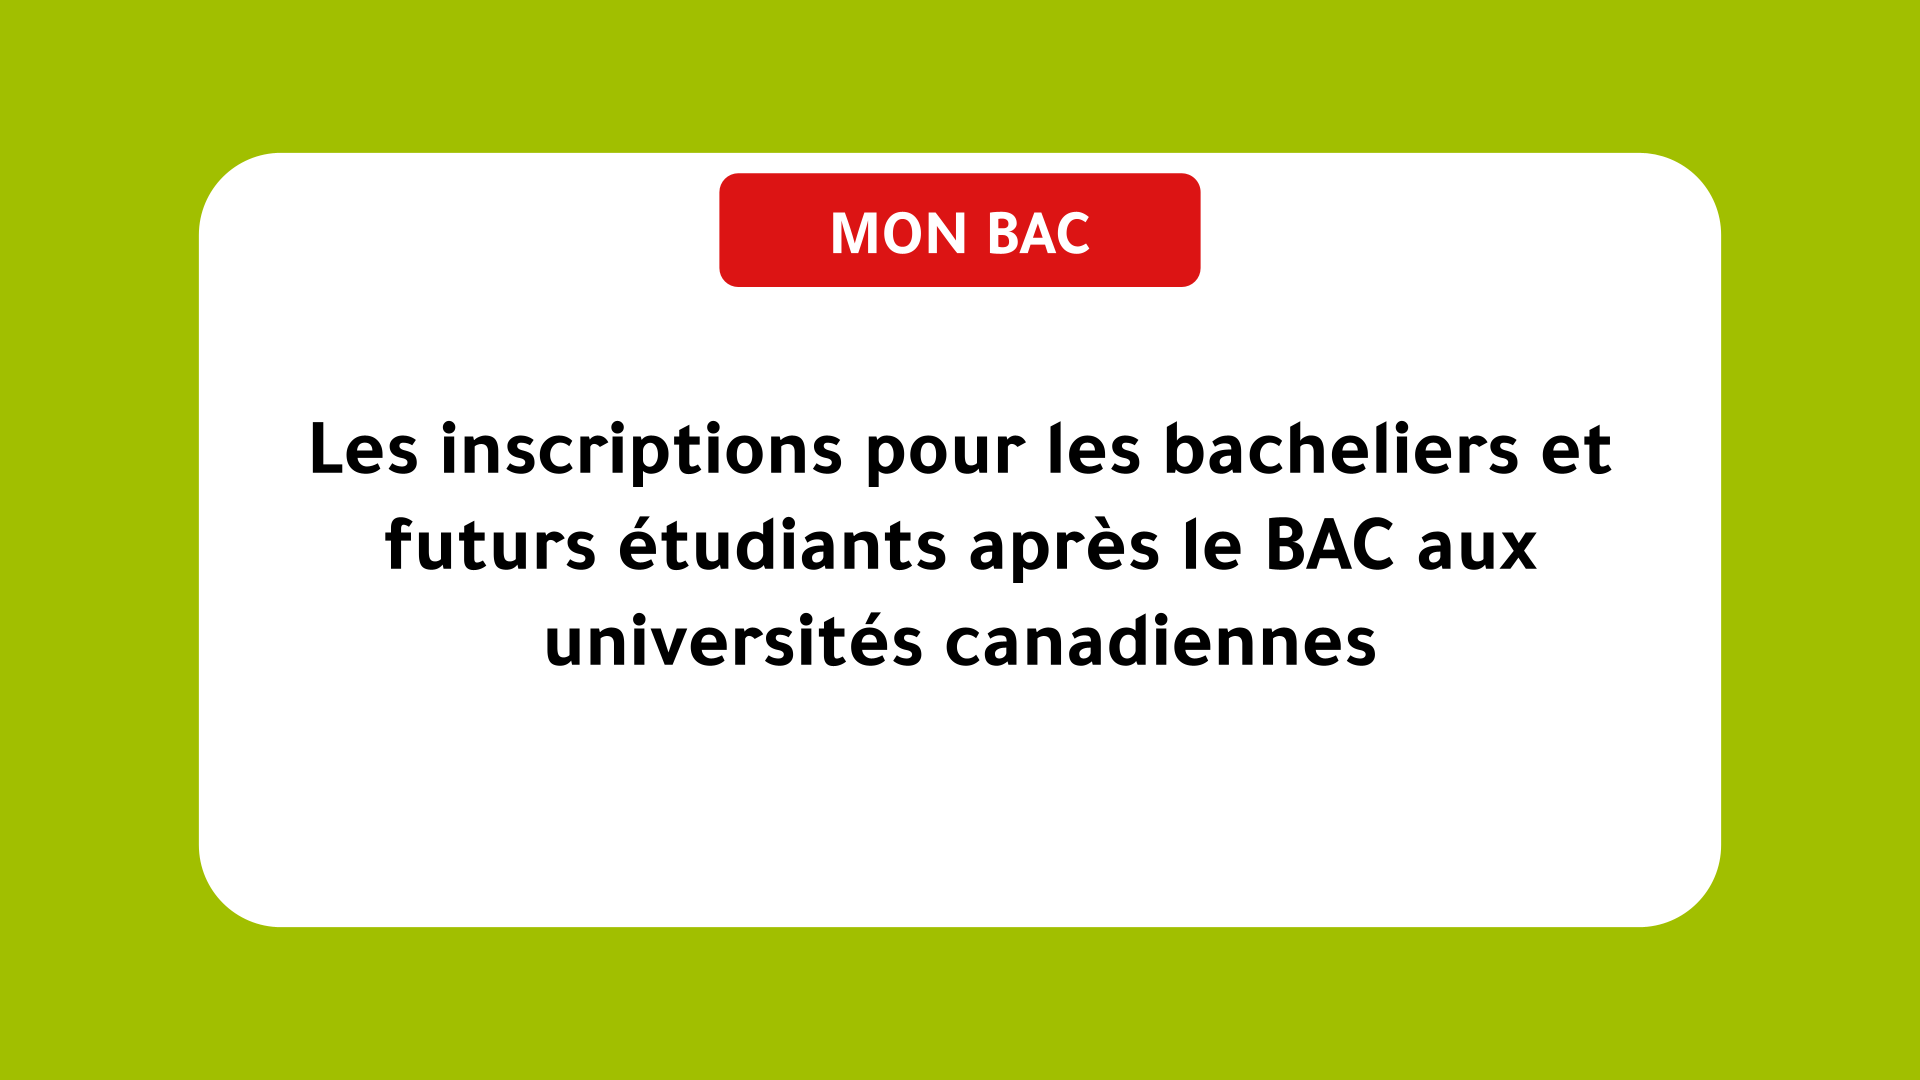 Les inscriptions pour les bacheliers et futurs étudiants après le BAC aux universités canadiennes